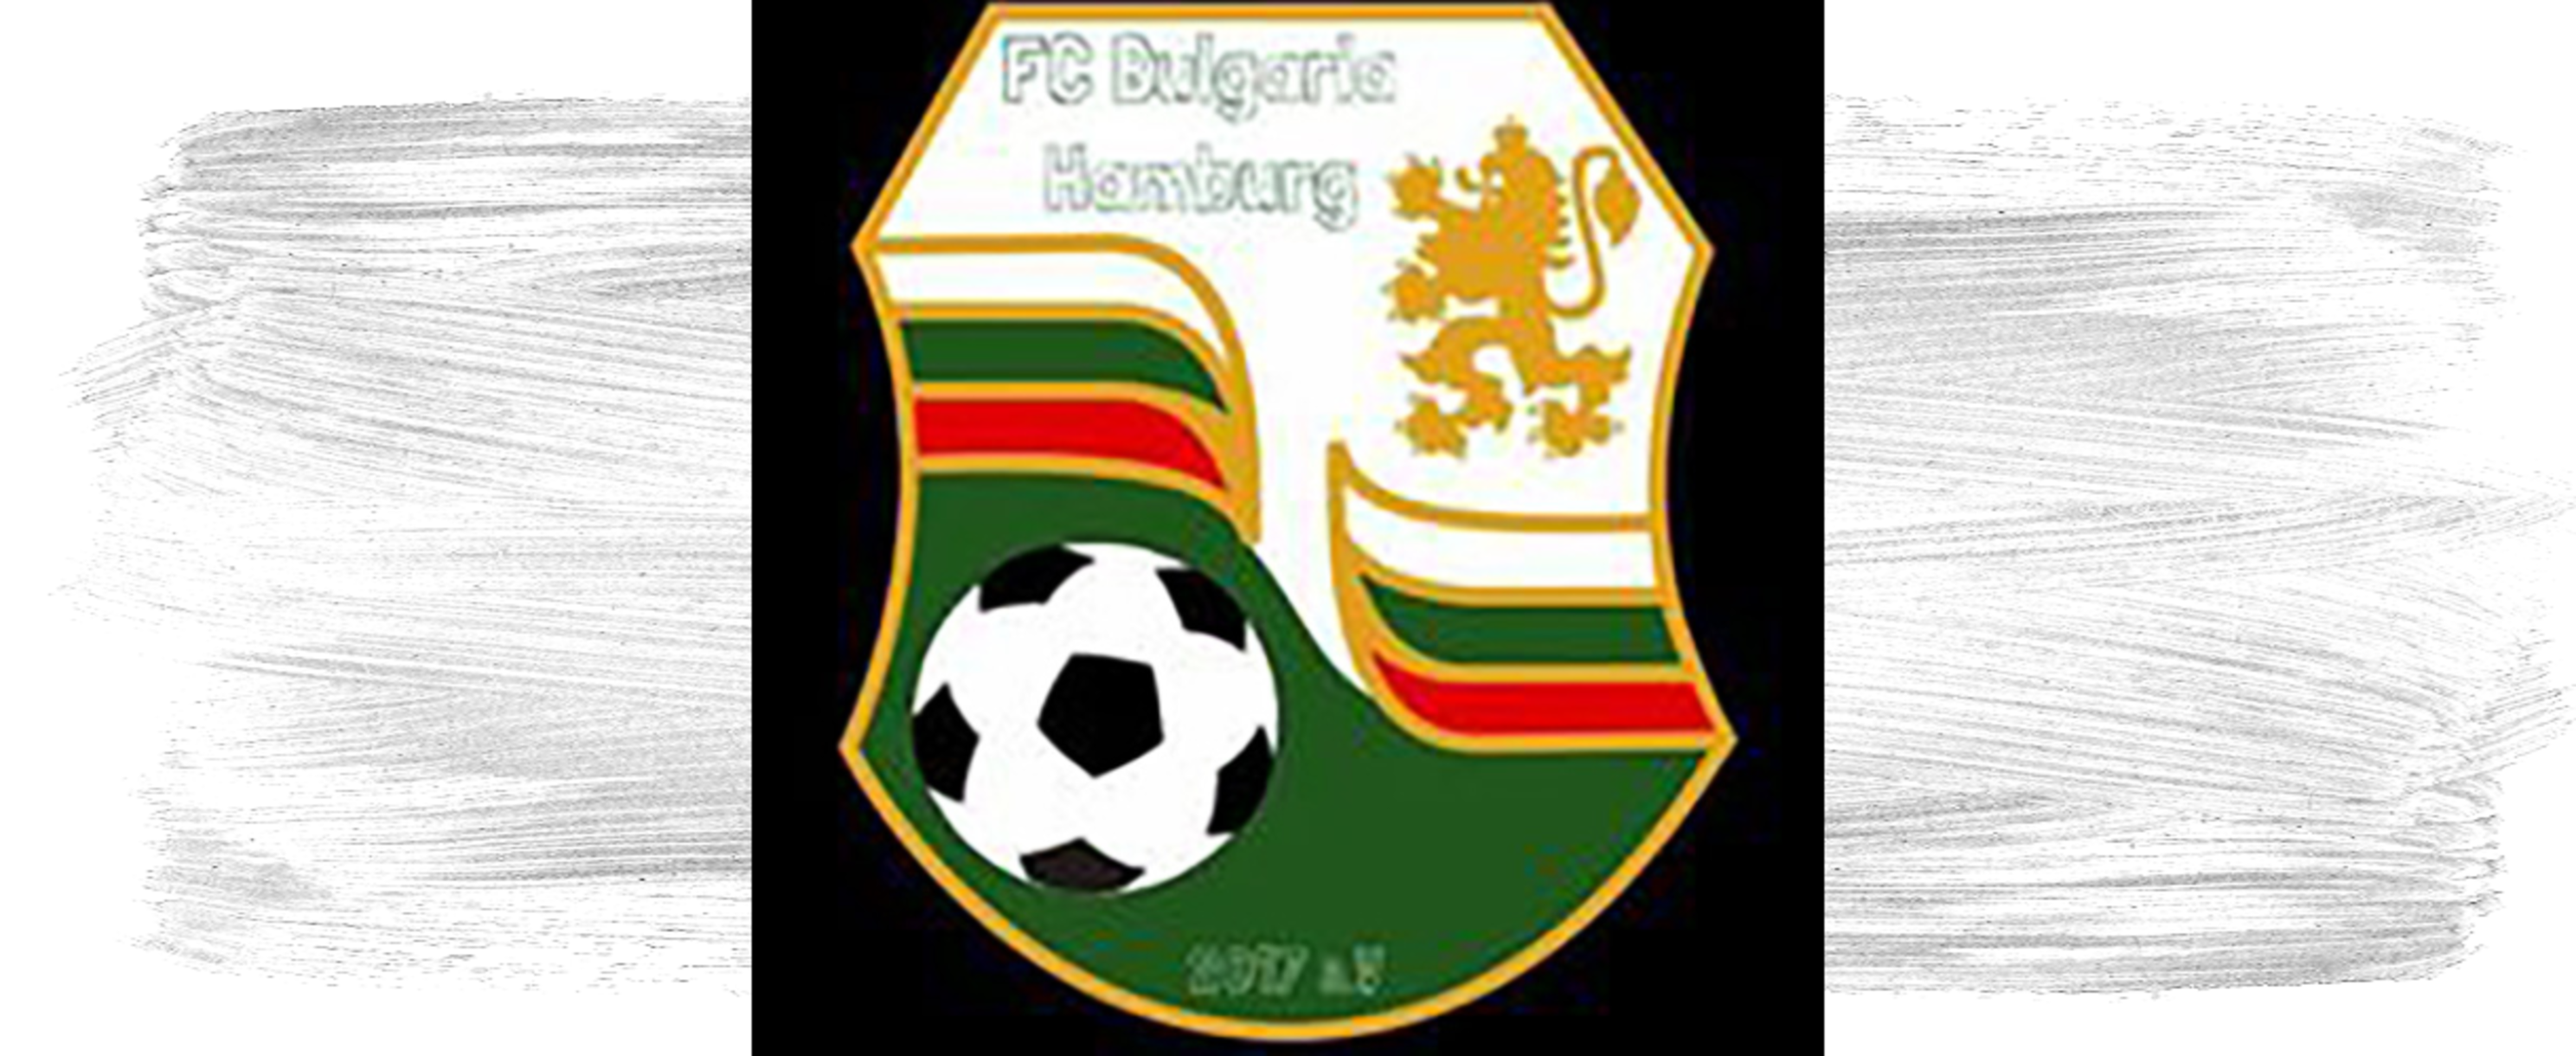 FC Bulgaria Hamburg 2017 e.V.